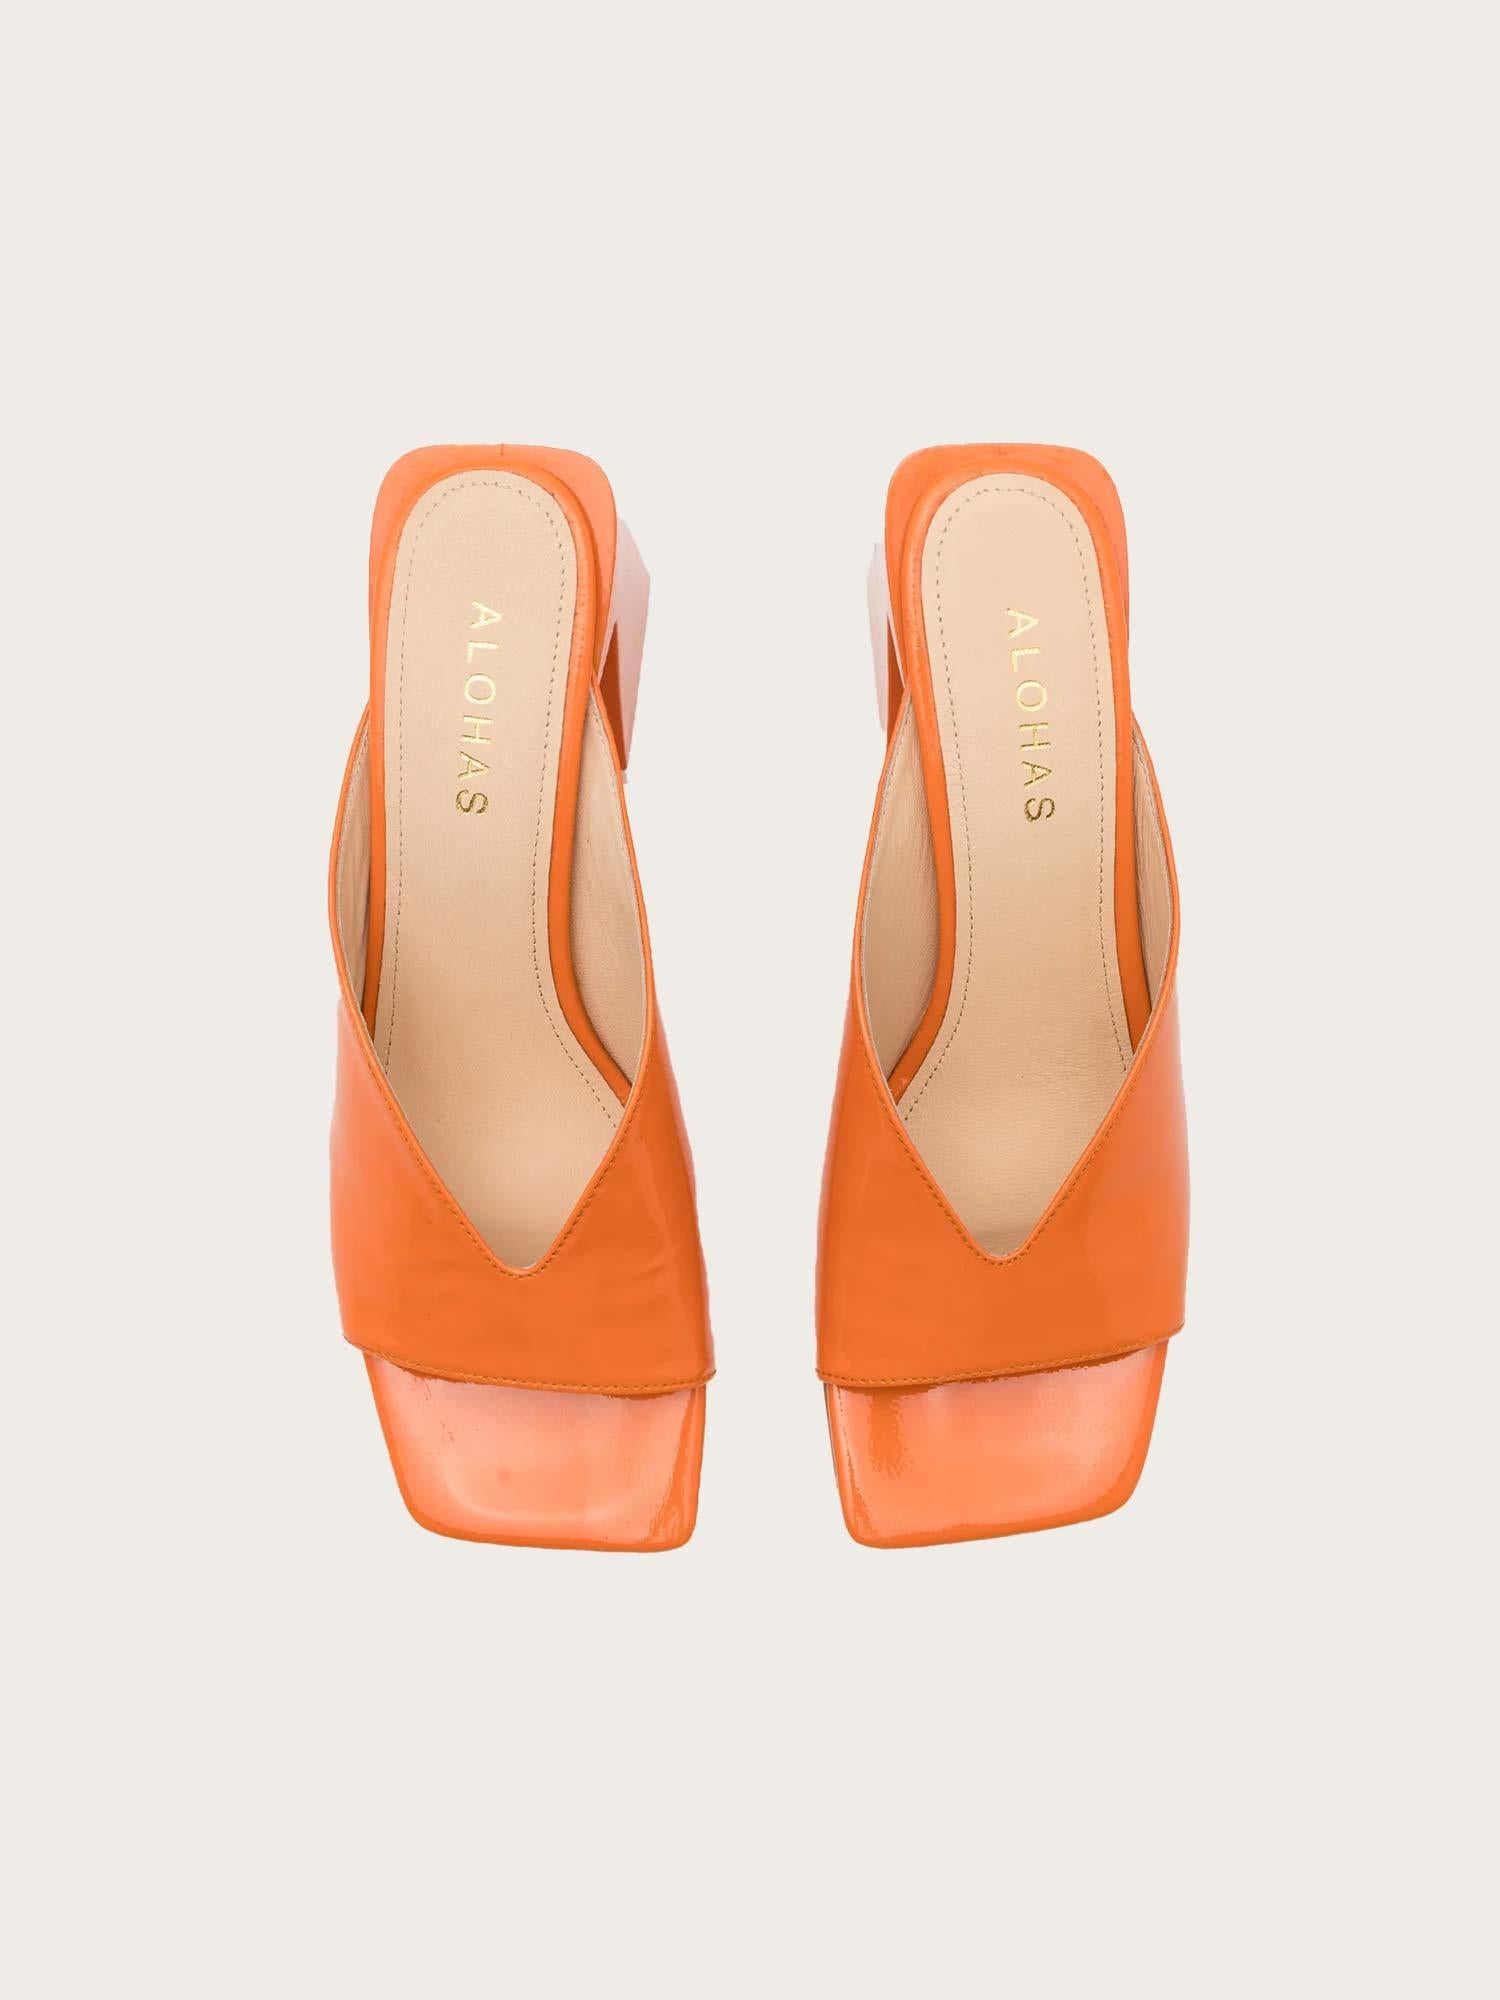 Tasha Leather Sandal - Orange